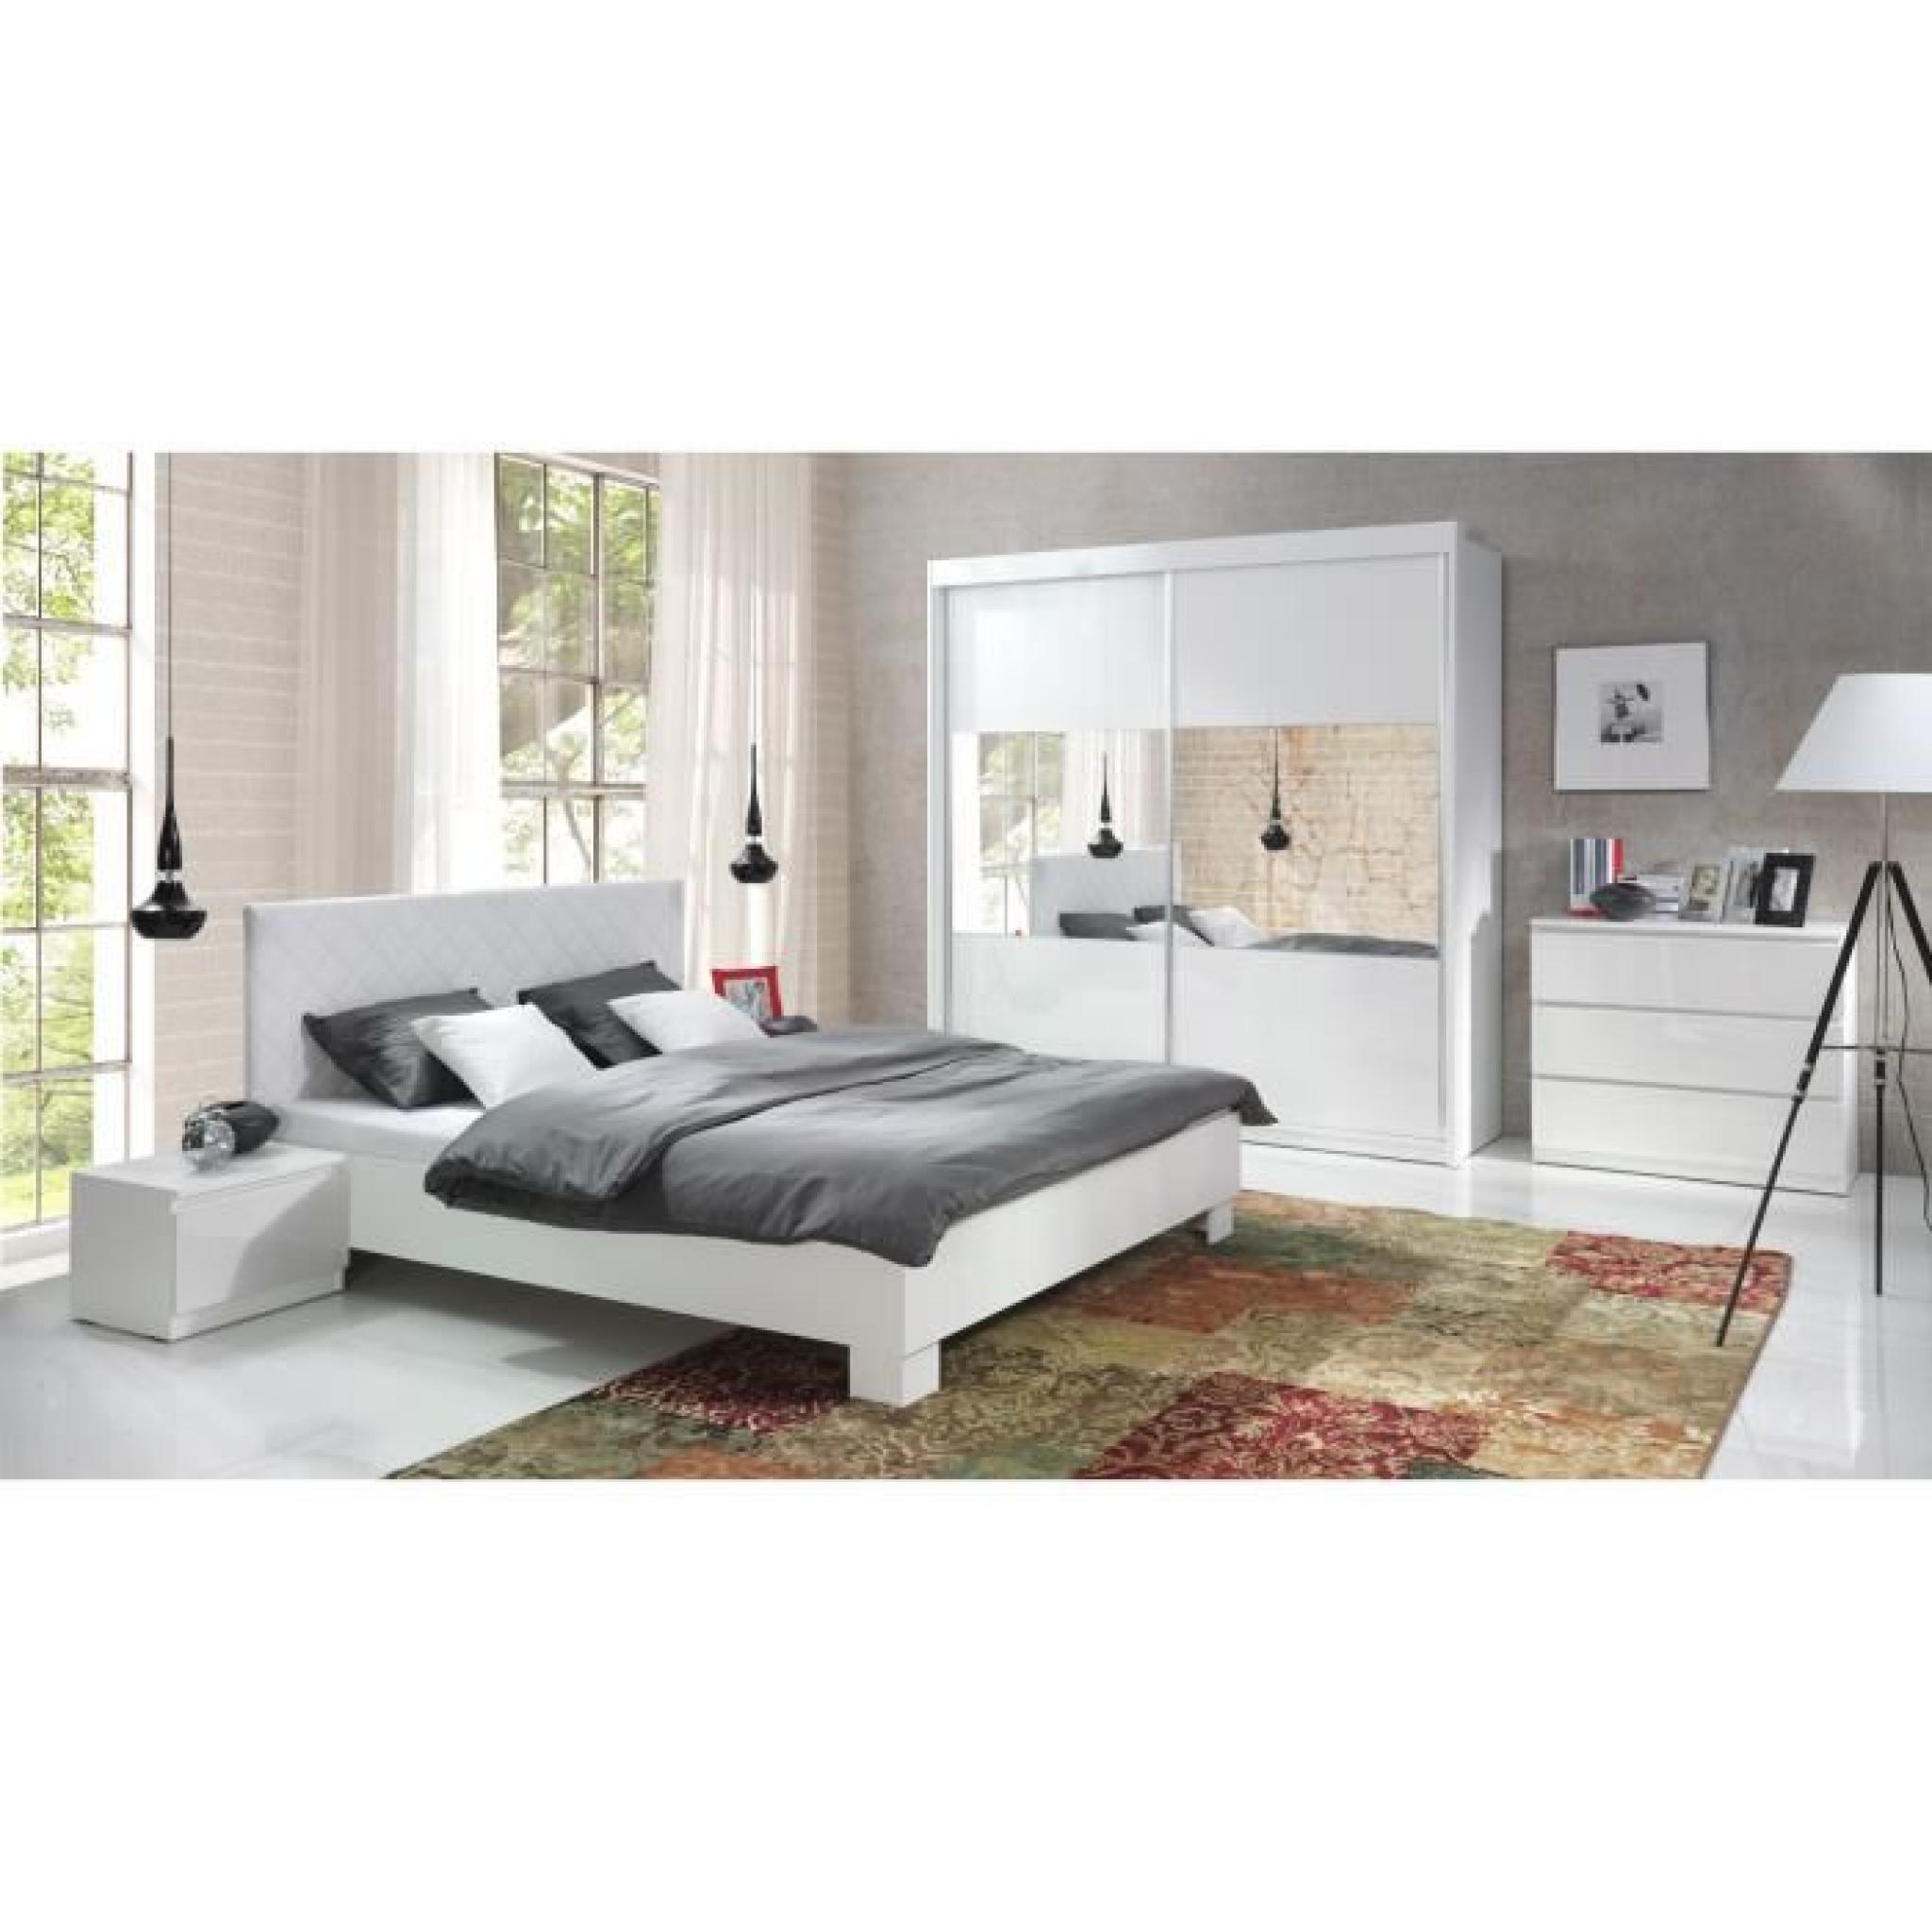 Chambre à coucher complète adulte VERSUS blanche laquée. Lit + armoire + chevets + commode. Meuble design en promotion.